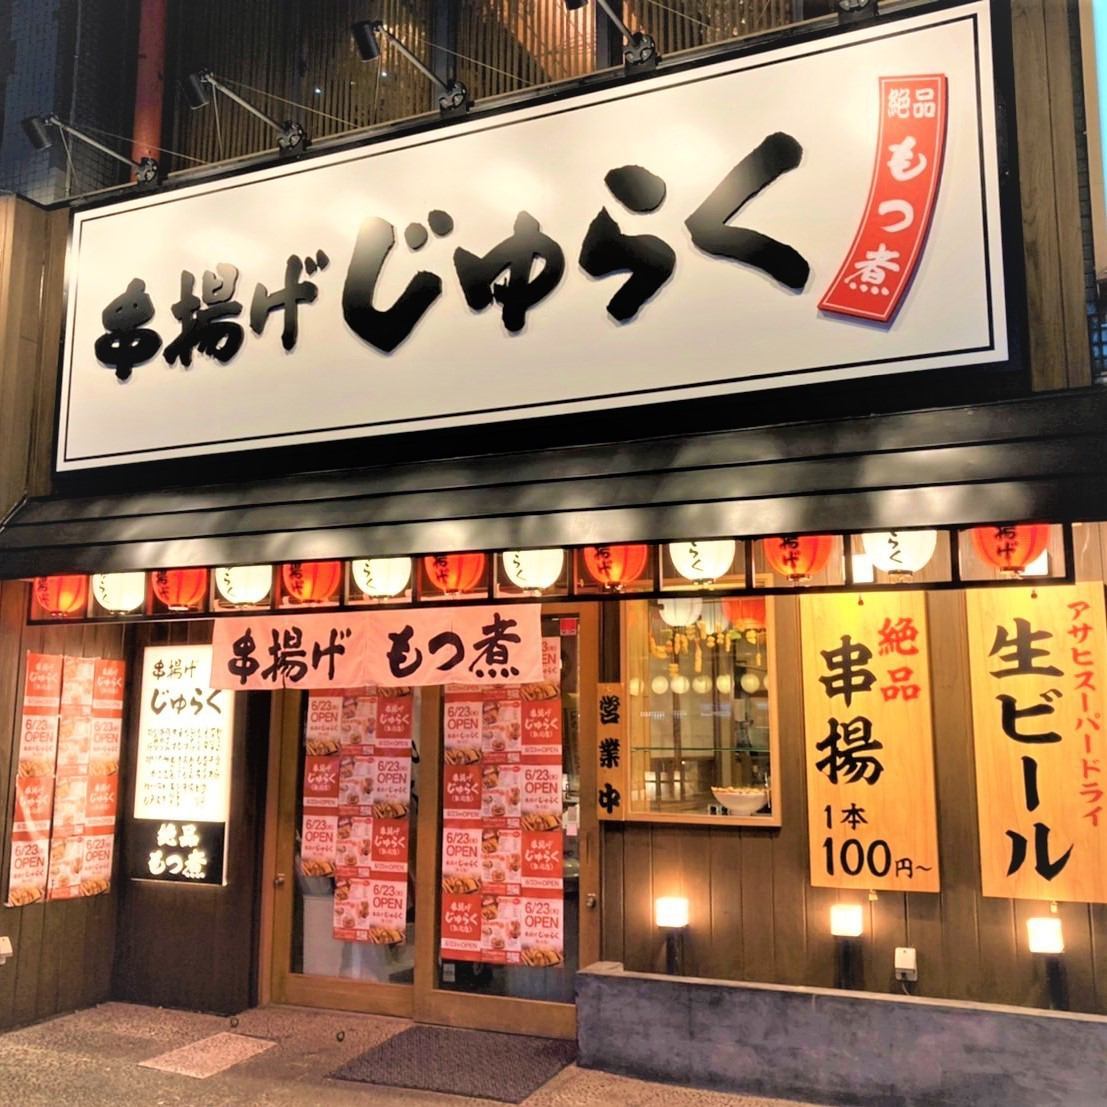 니가타라고하면 "주라쿠", 싸고, 맛있는, 즐거운! 꼬치 튀김 주라쿠 니가타 가게에 오신 것을 환영합니다!